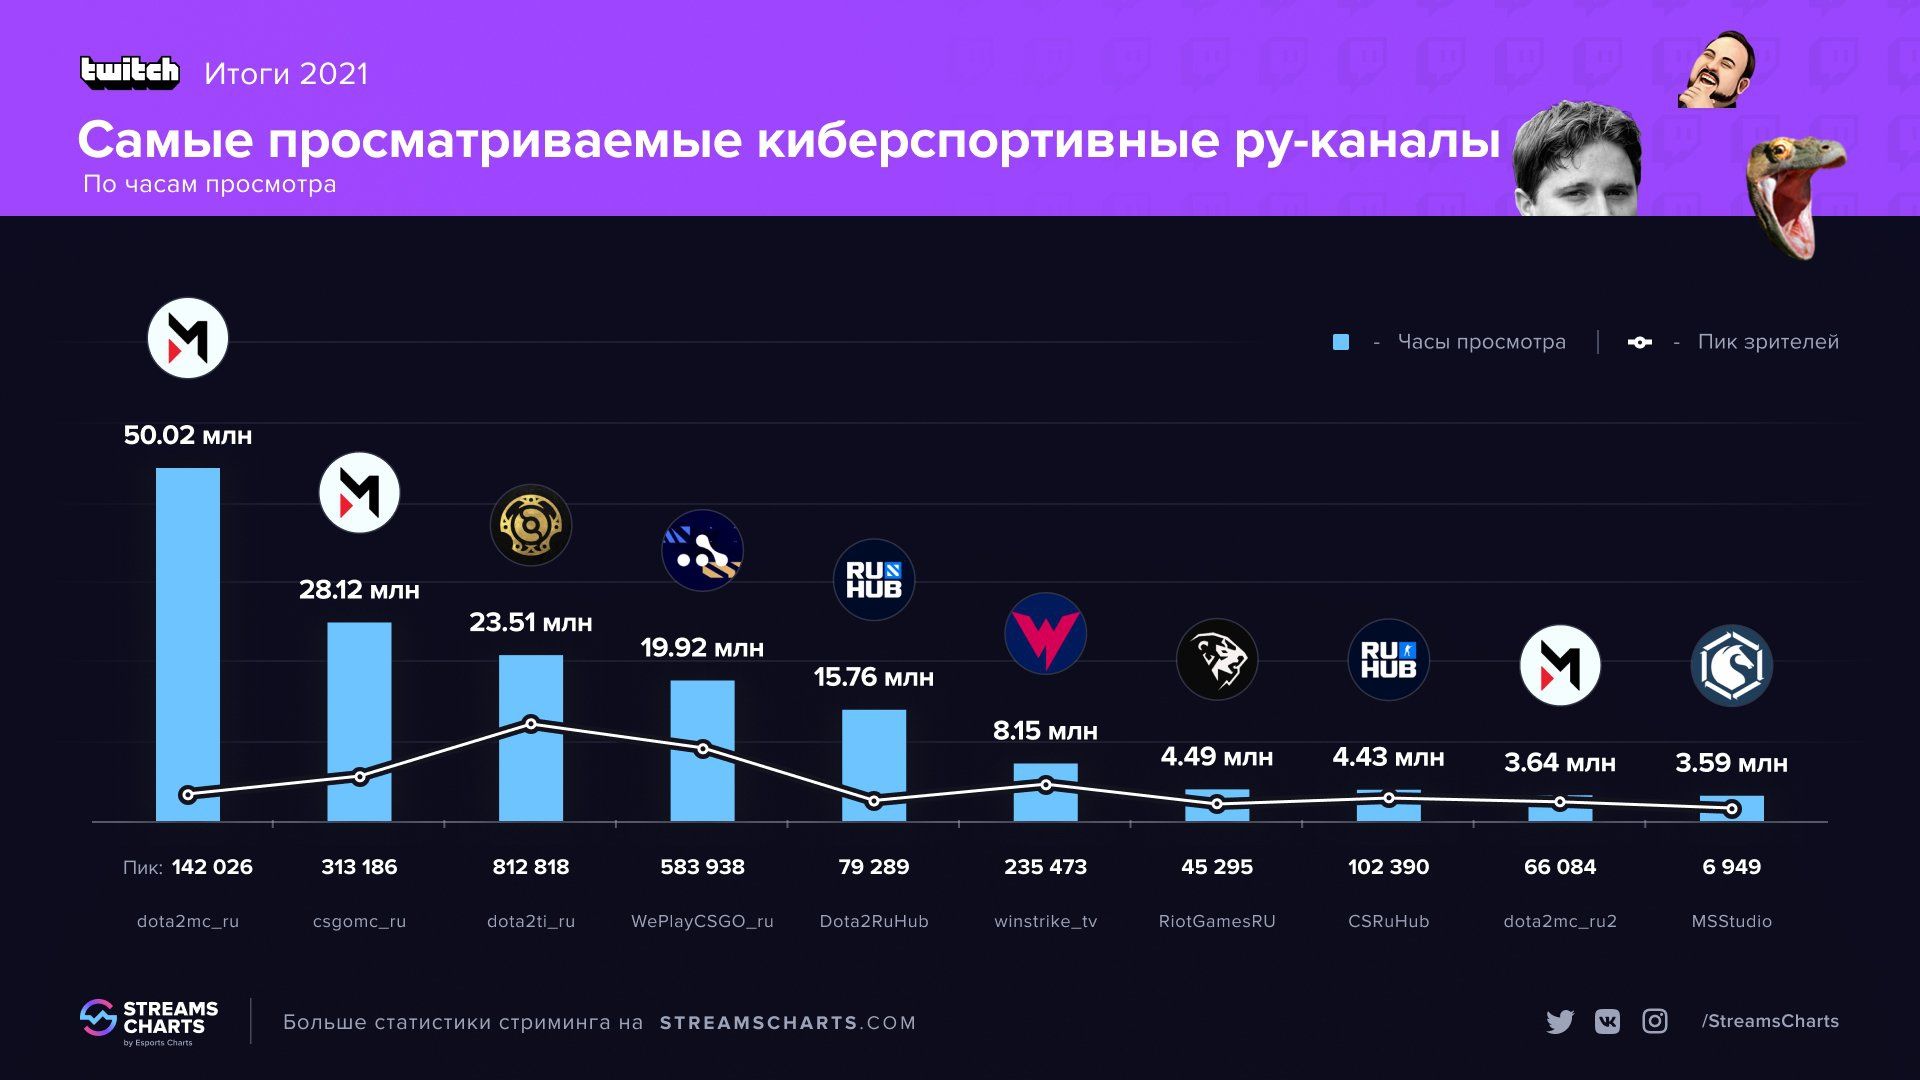 Самые просматриваемые киберспортивные каналы в русскоязычном сегменте Twitch в 2021 году